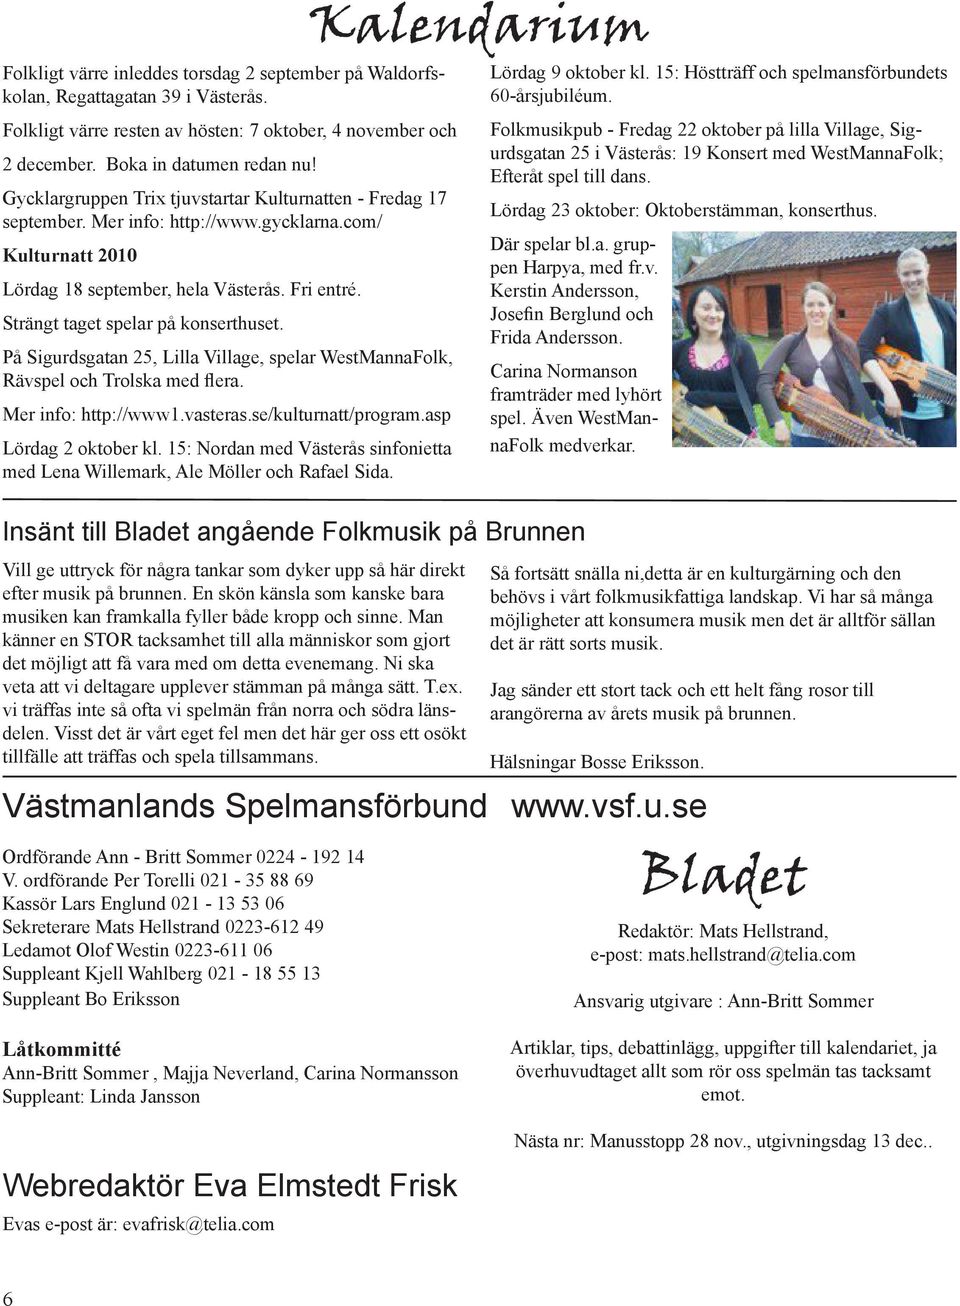 Strängt taget spelar på konserthuset. På Sigurdsgatan 25, Lilla Village, spelar WestMannaFolk, Rävspel och Trolska med flera. Mer info: http://www1.vasteras.se/kulturnatt/program.